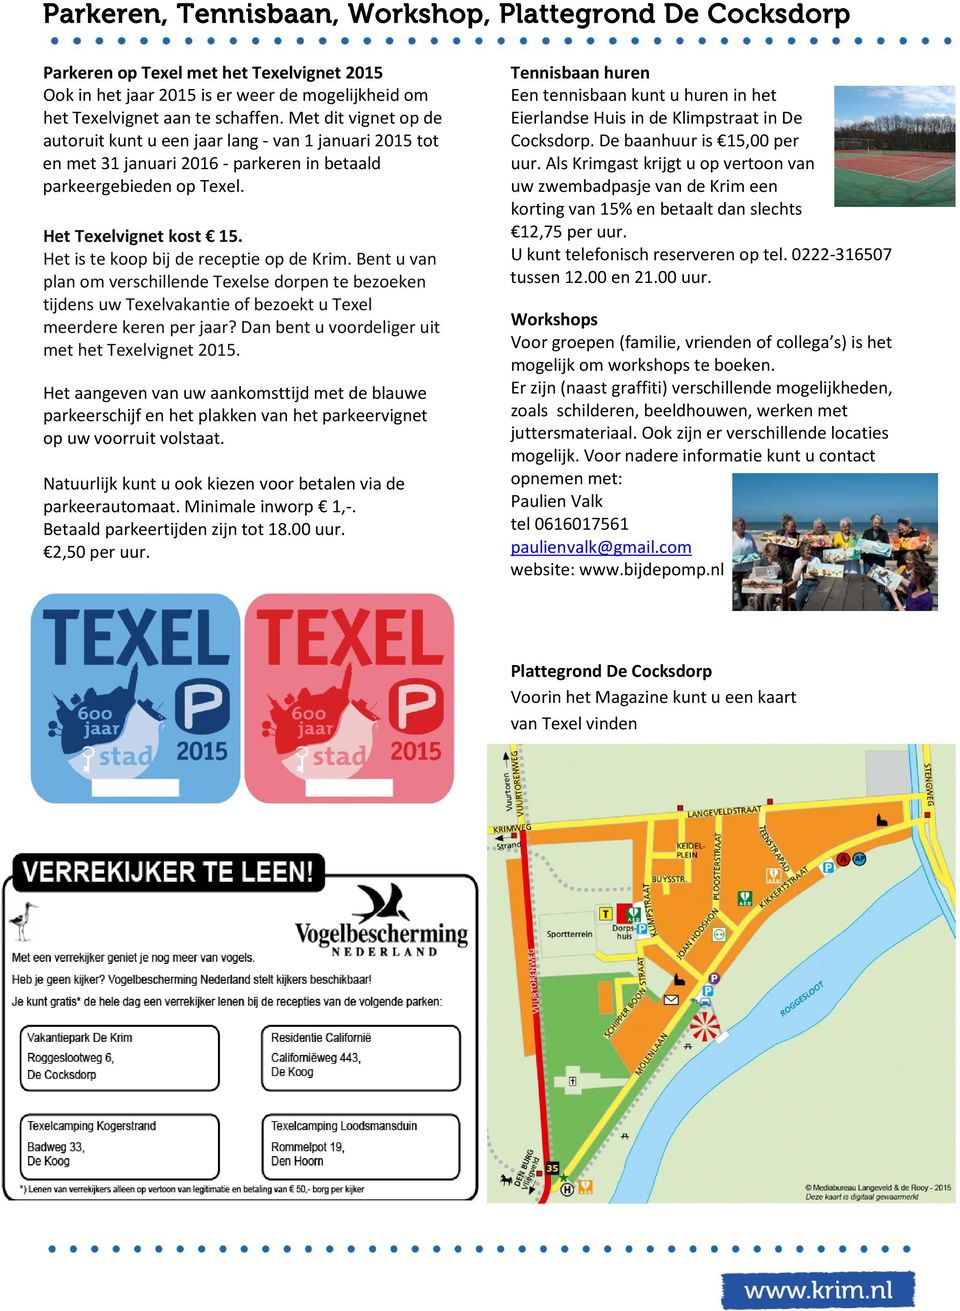 Het is te koop bij de receptie op de Krim. Bent u van plan om verschillende Texelse dorpen te bezoeken tijdens uw Texelvakantie of bezoekt u Texel meerdere keren per jaar?